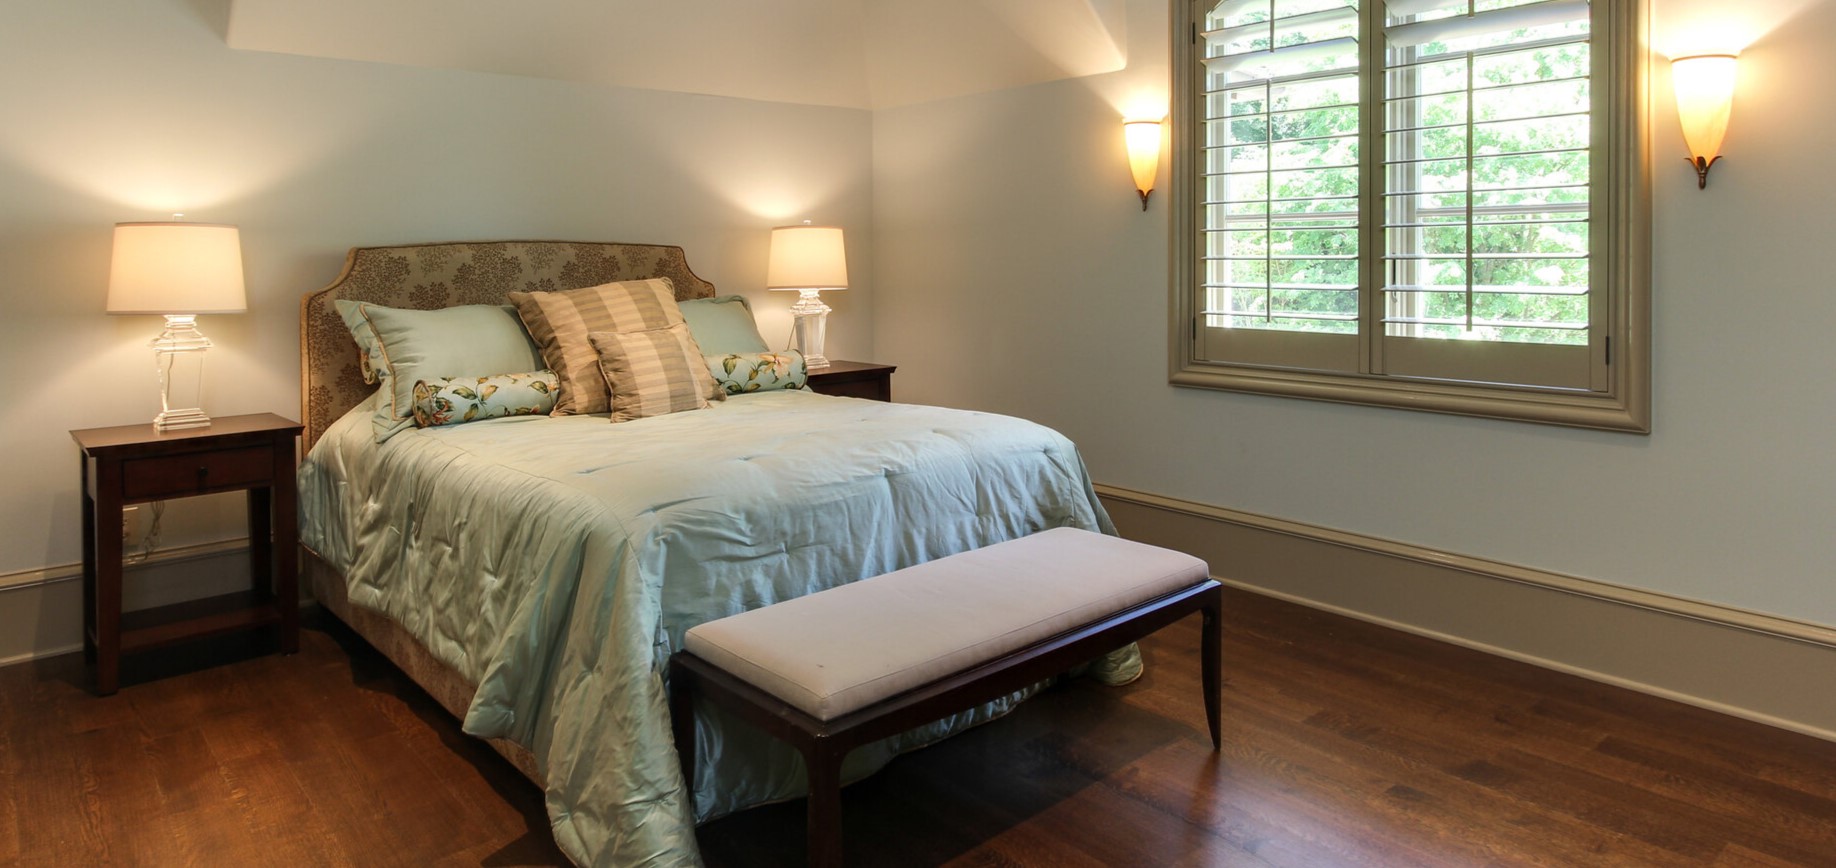 Оформление спальни по фен-шуй: правила расстановки мебели, выбор цвета для интерьера